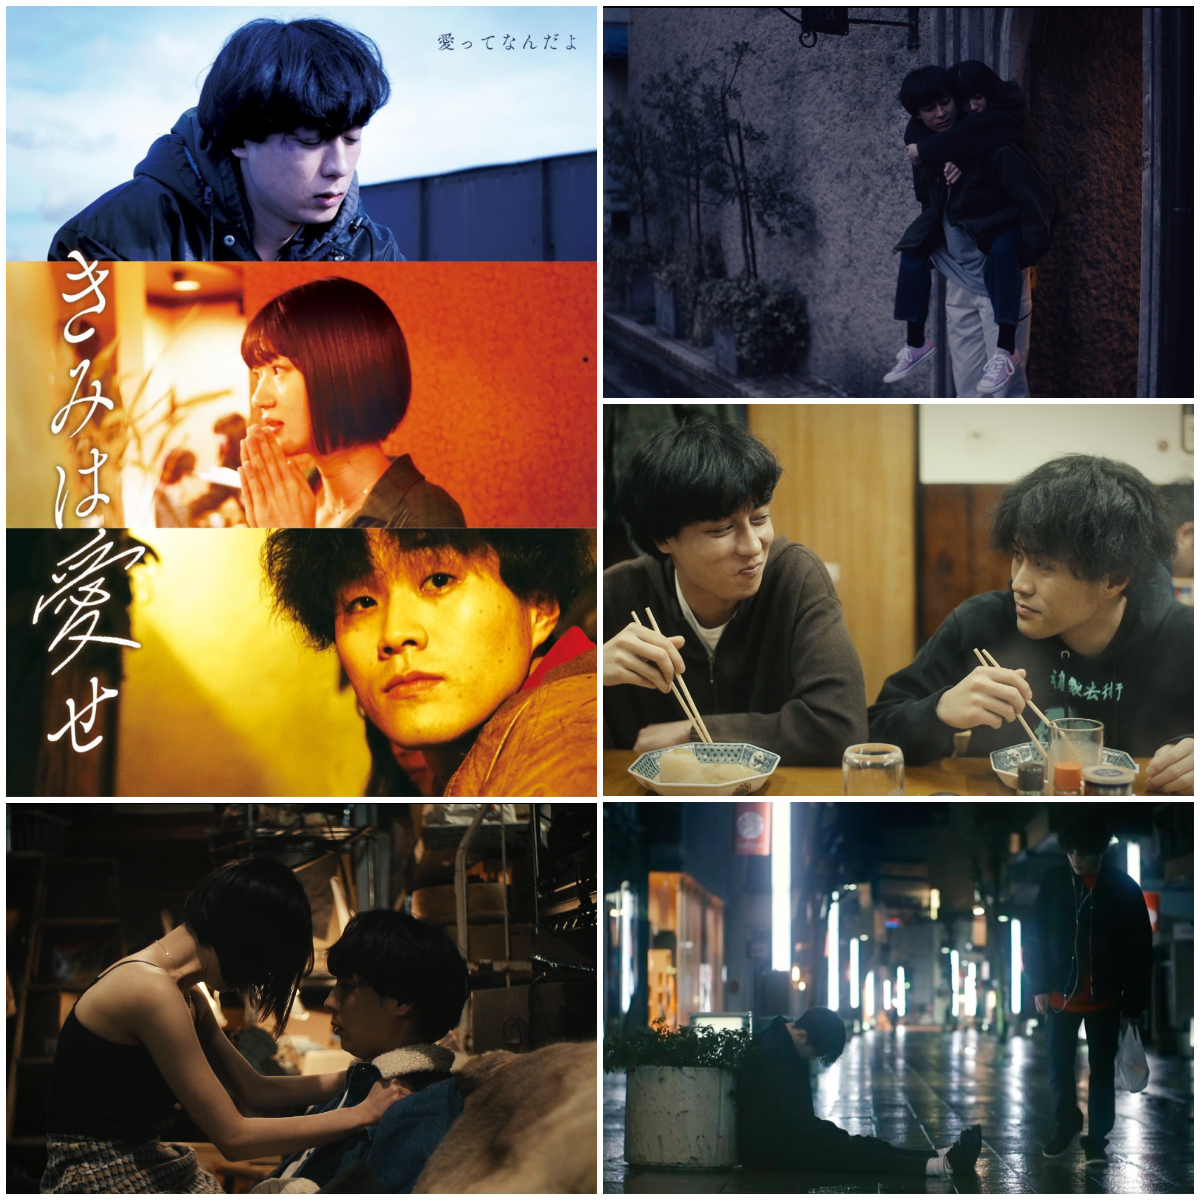 オール金沢ロケの映画『きみは愛せ』が、金沢シネモンド他全国で上映中。